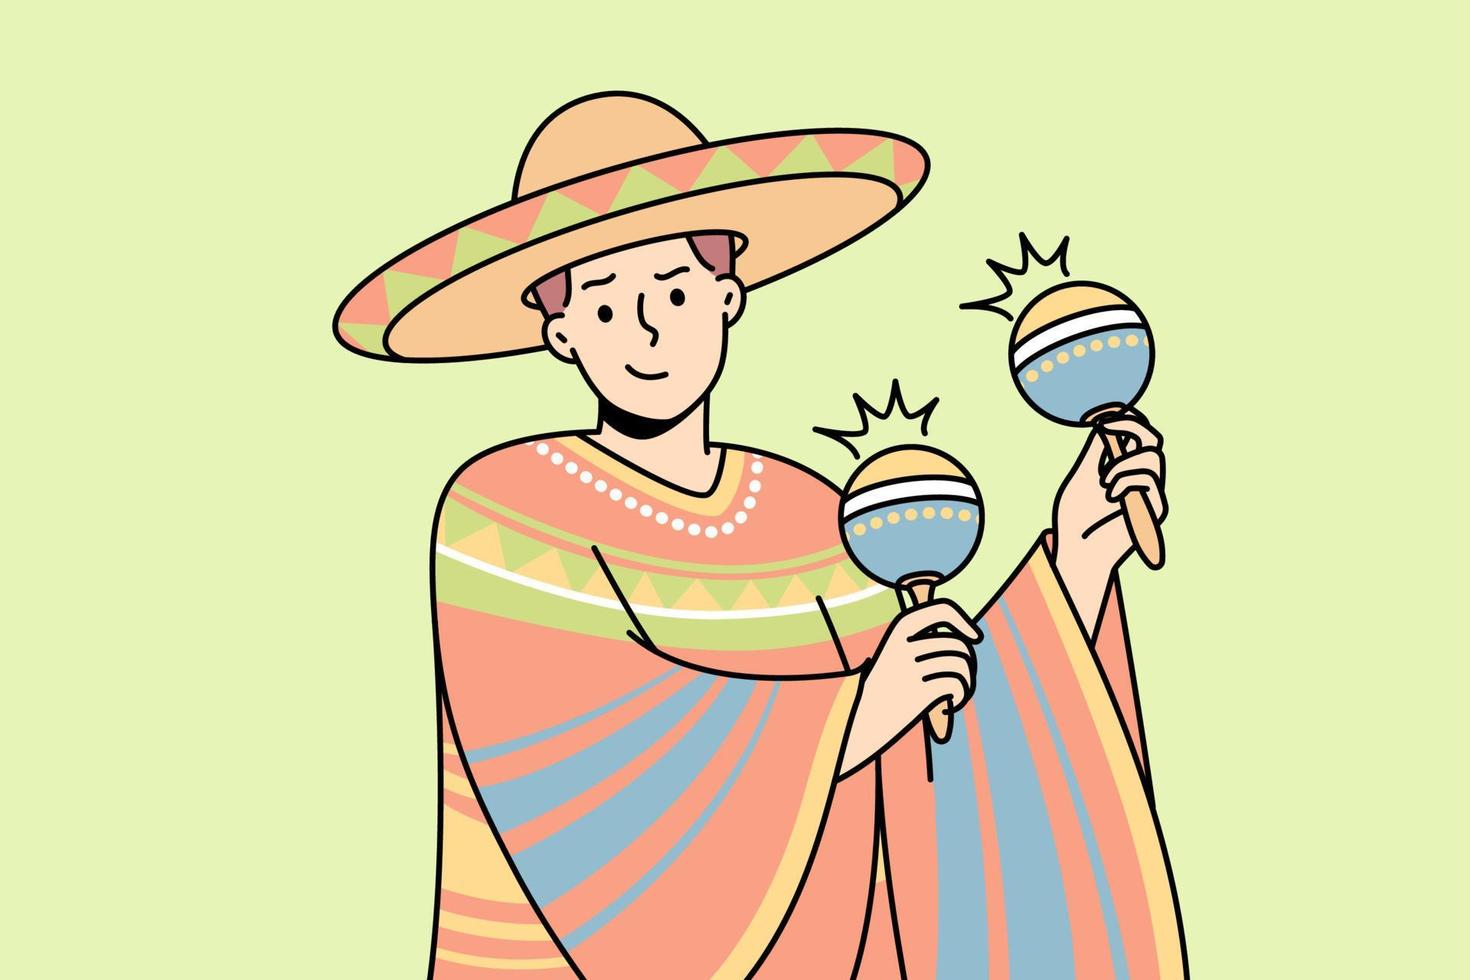 homem latino em traje nacional, sombrero toca maracas. cara com roupa tradicional mexicana, chapéu de abas largas, segura chac-chac, shakers ou chocalhos cubanos. ilustração em vetor linha fina colorida.